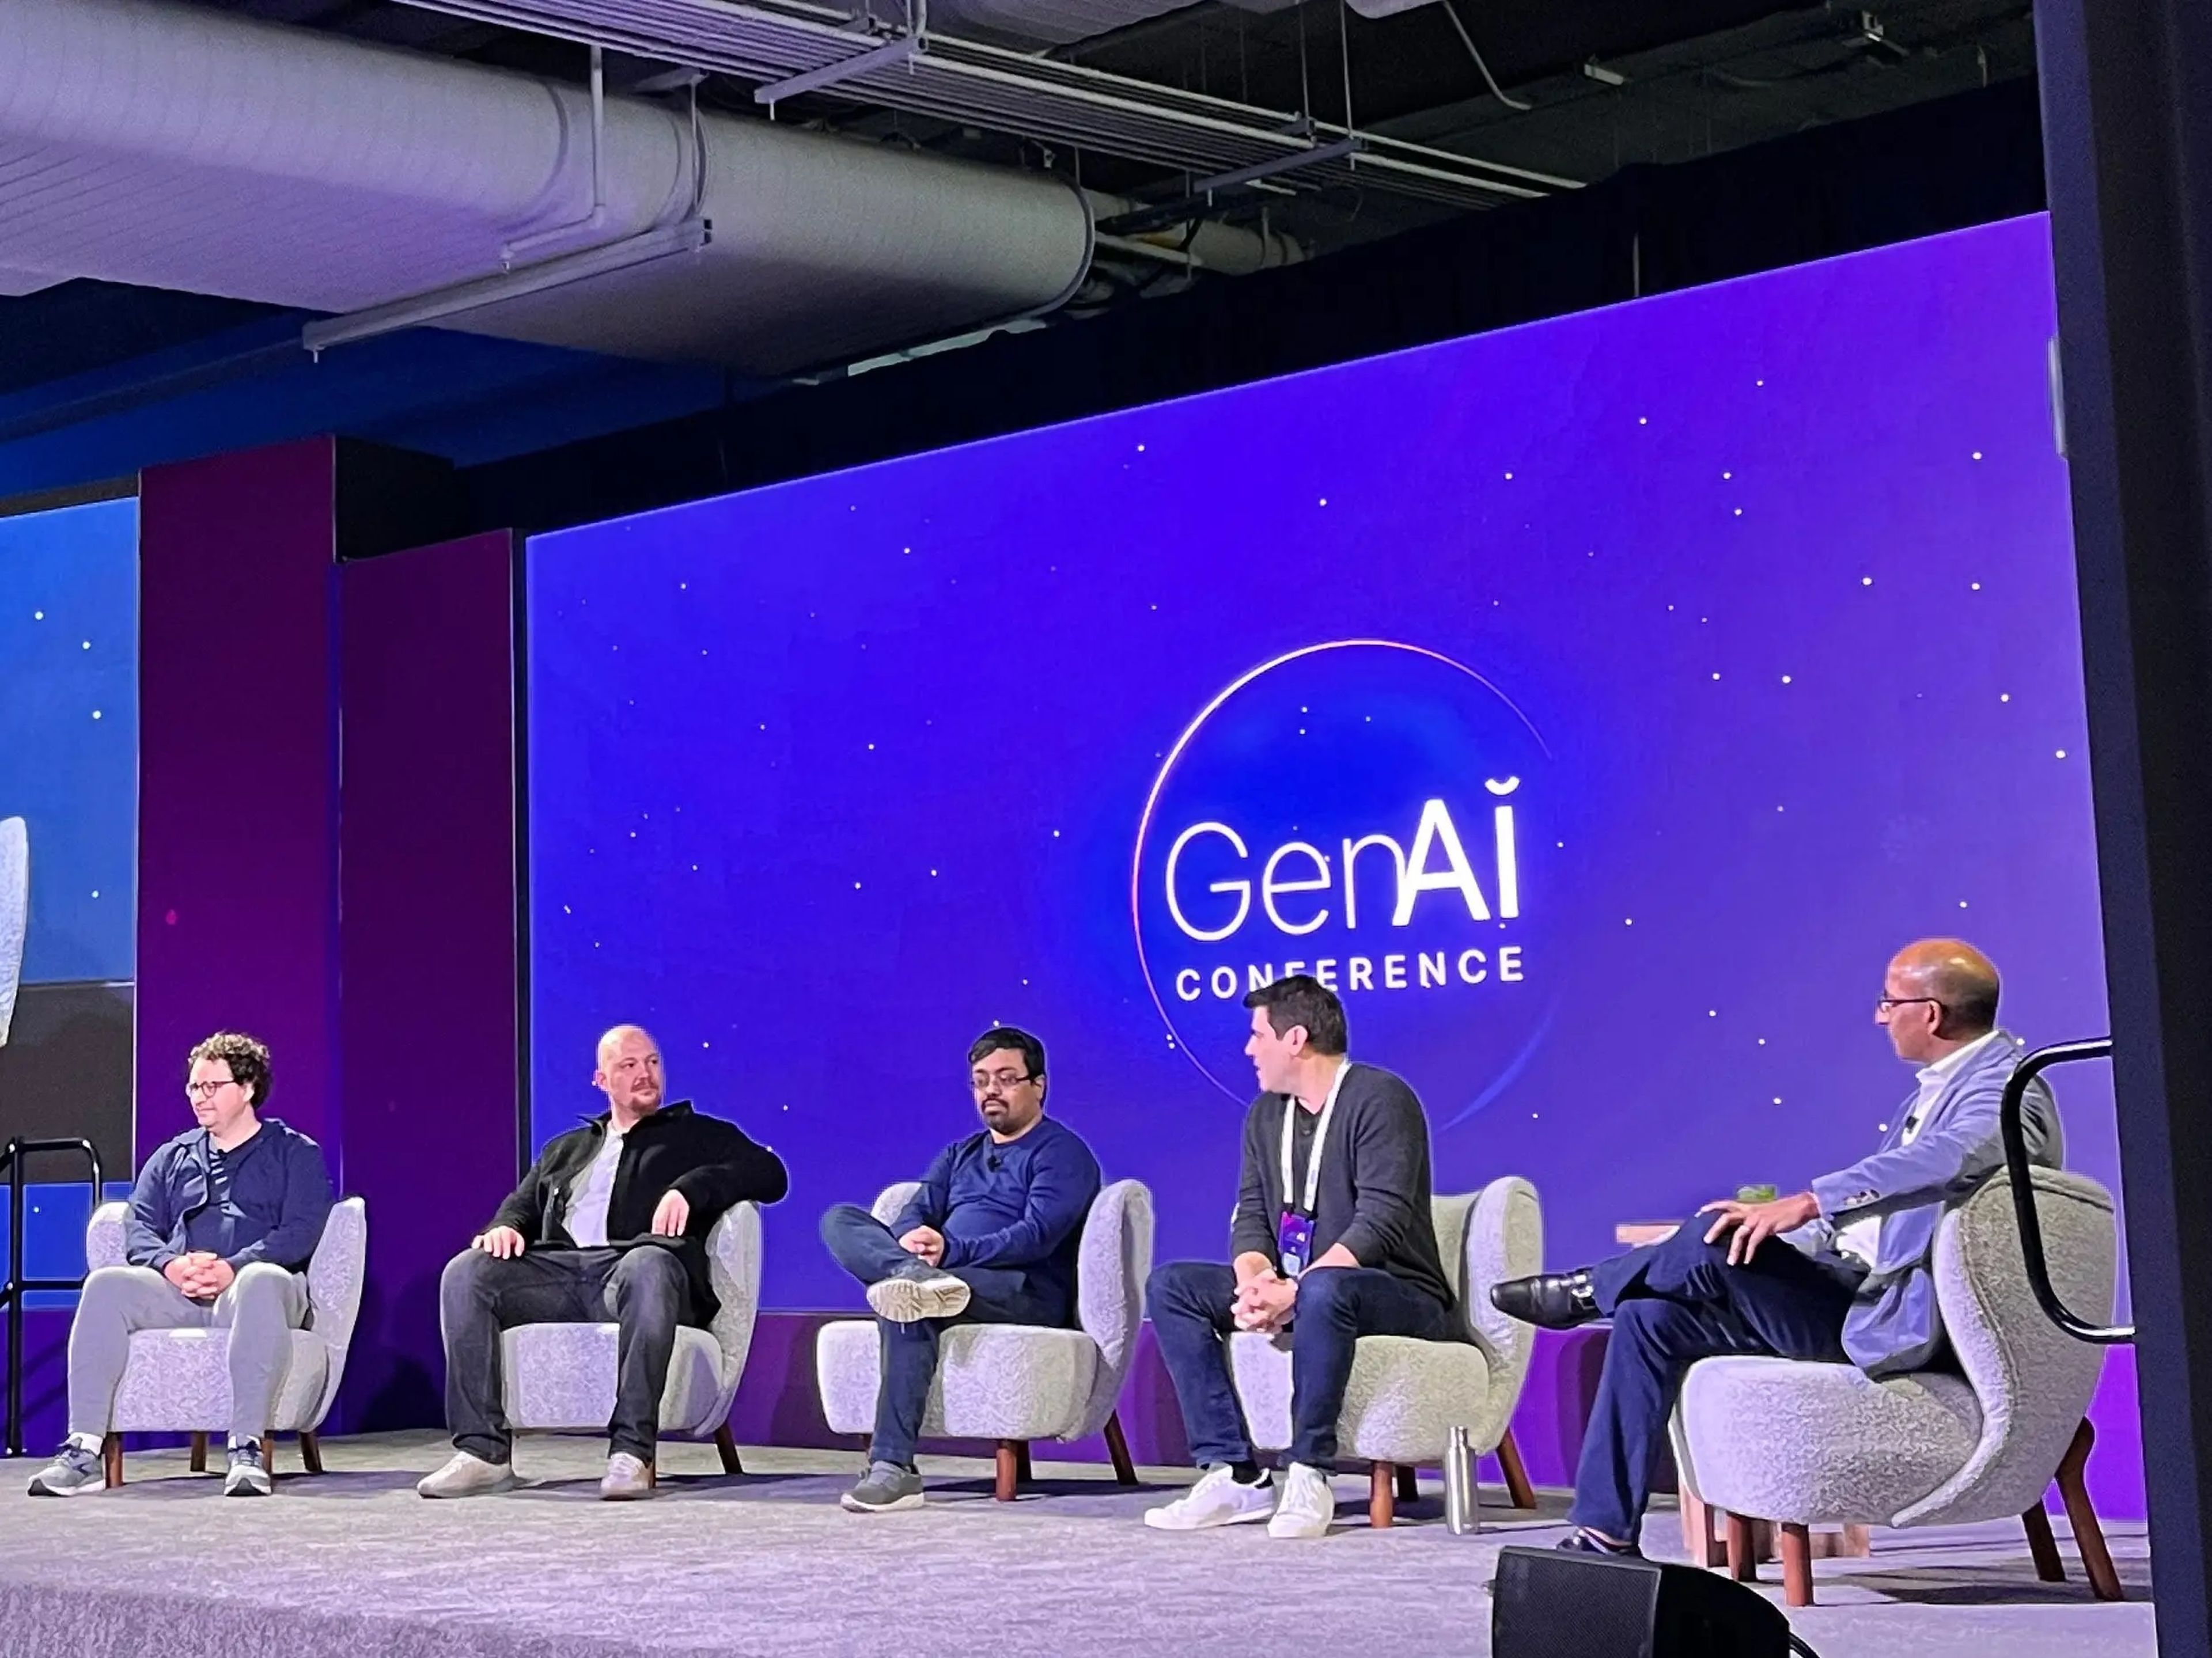 De izquierda a derecha: Dario Amodei, CEO de Anthropic; Amjad Masad, CEO de Replit; Emad Mostaque, CEO de Stability AI; Greg Larson, vicepresidente de ingeniería de Jasper, y Sameer Dholakia, socio de Bessemer.